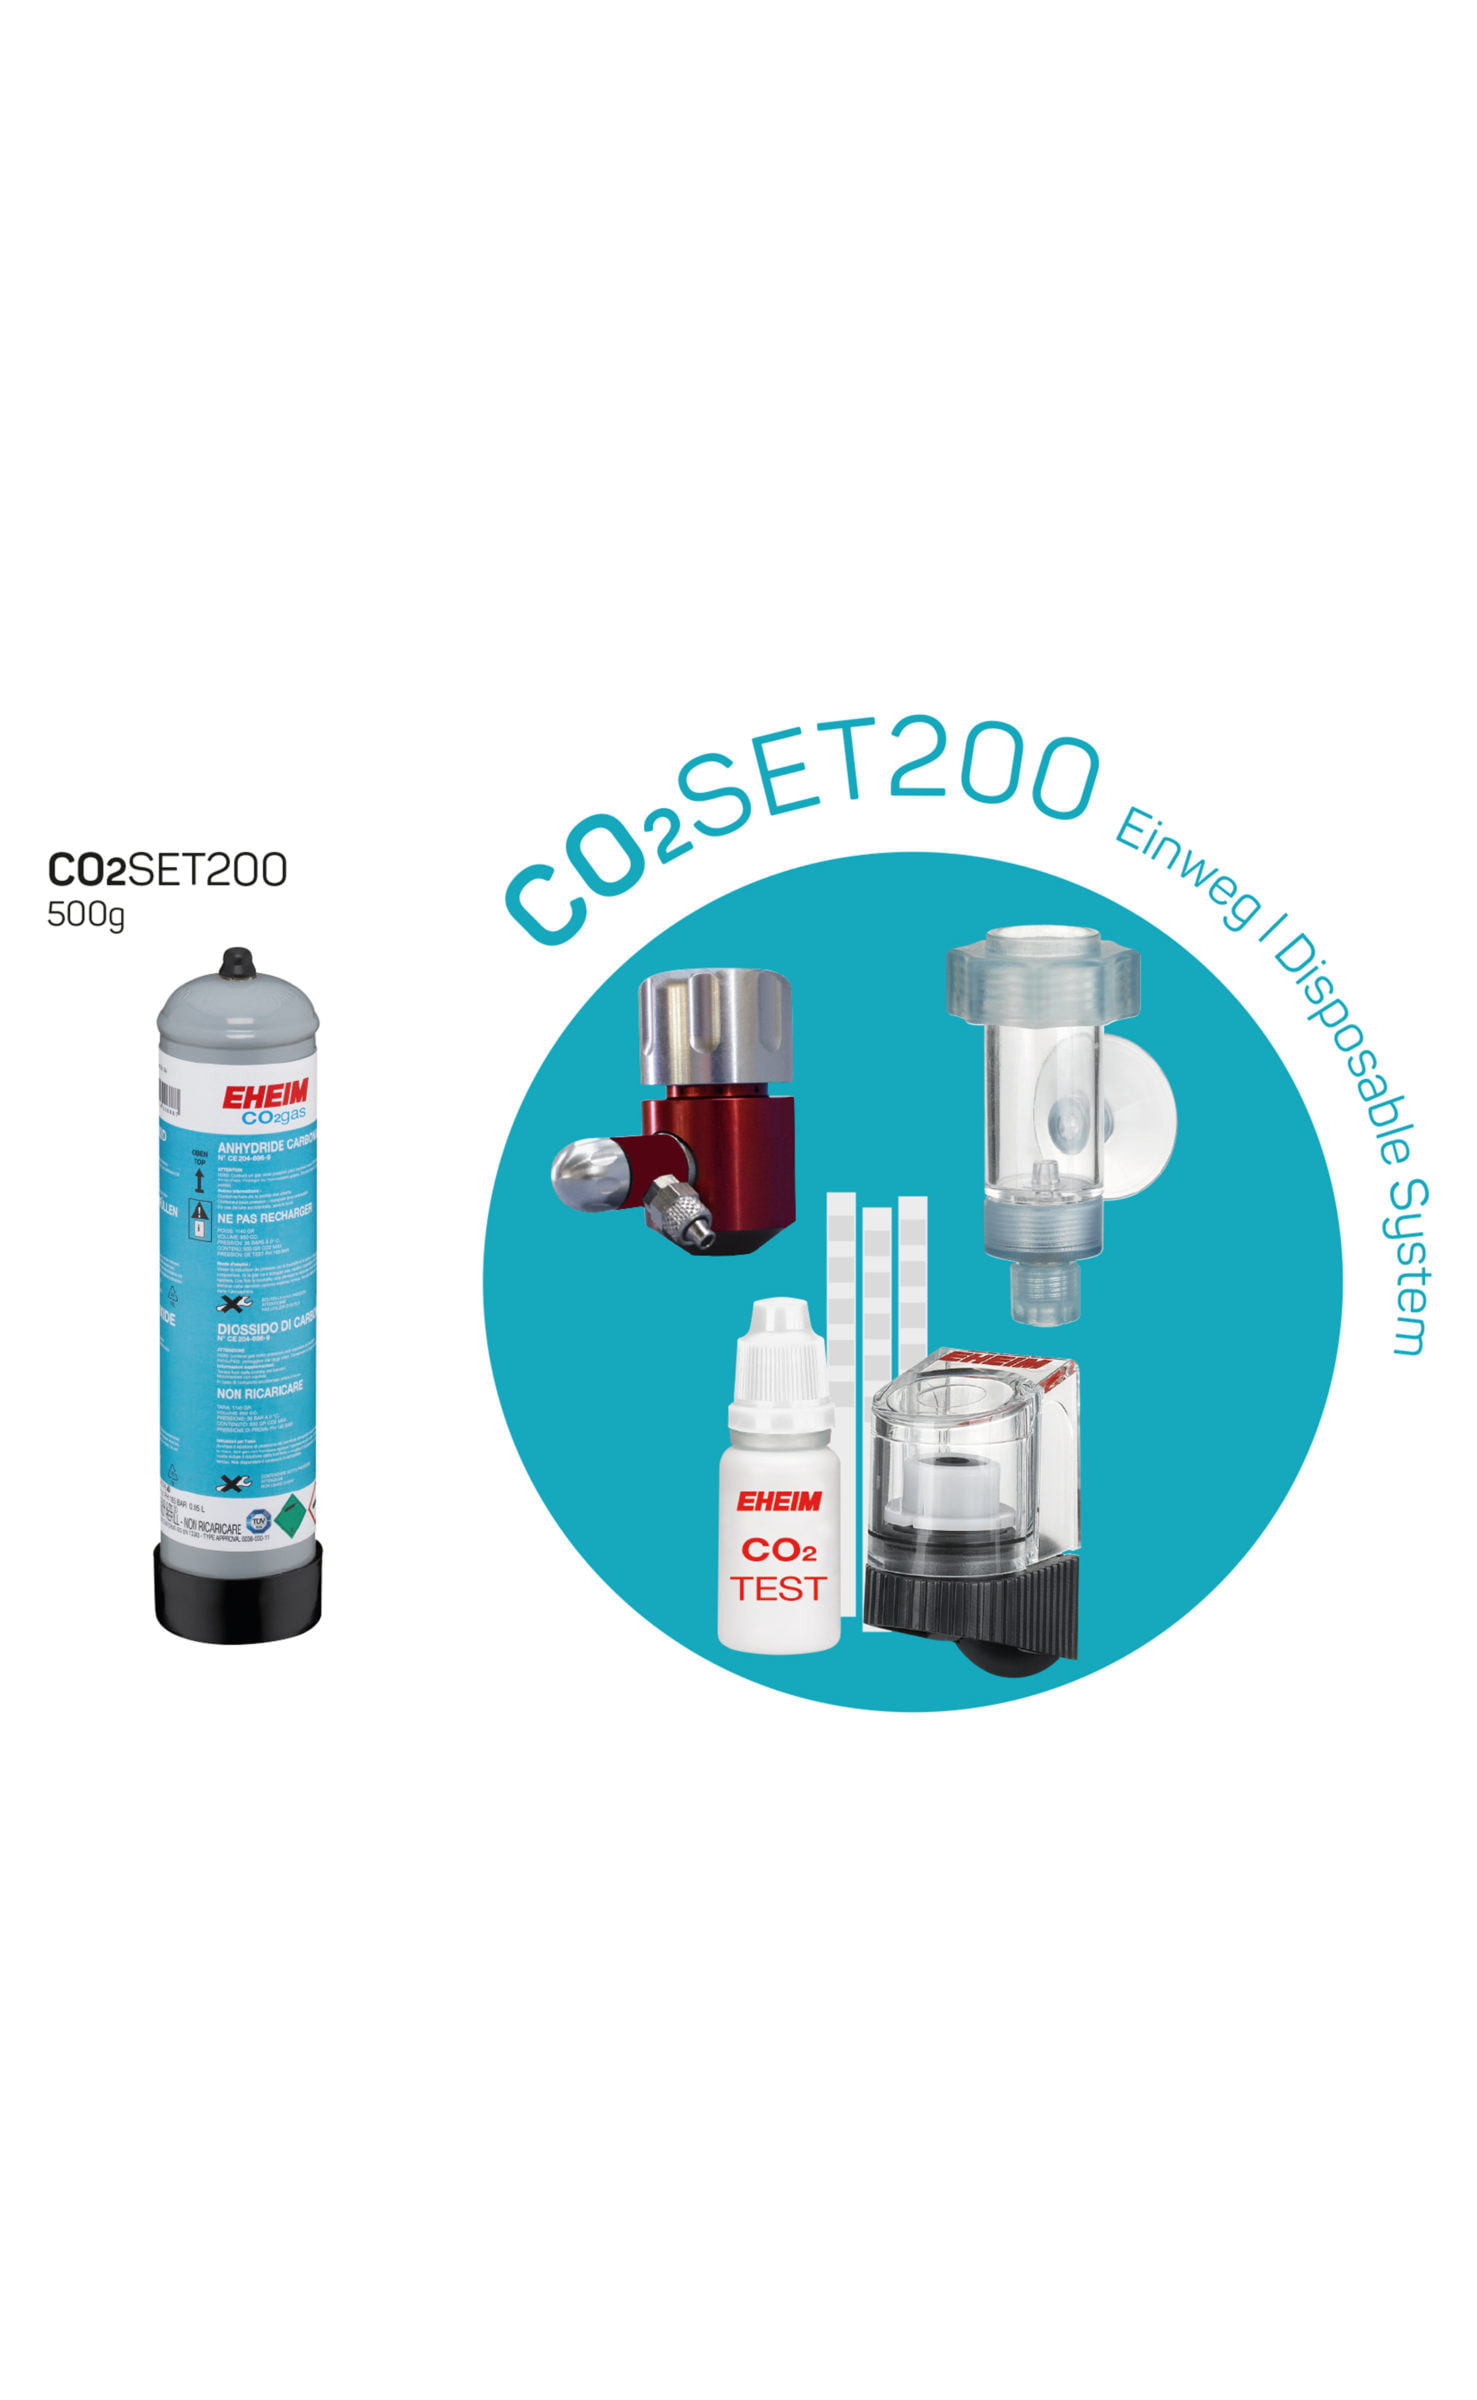 Set completo de CO2 de 500g desechable EHEIM CO2 SET 200 detalle 2